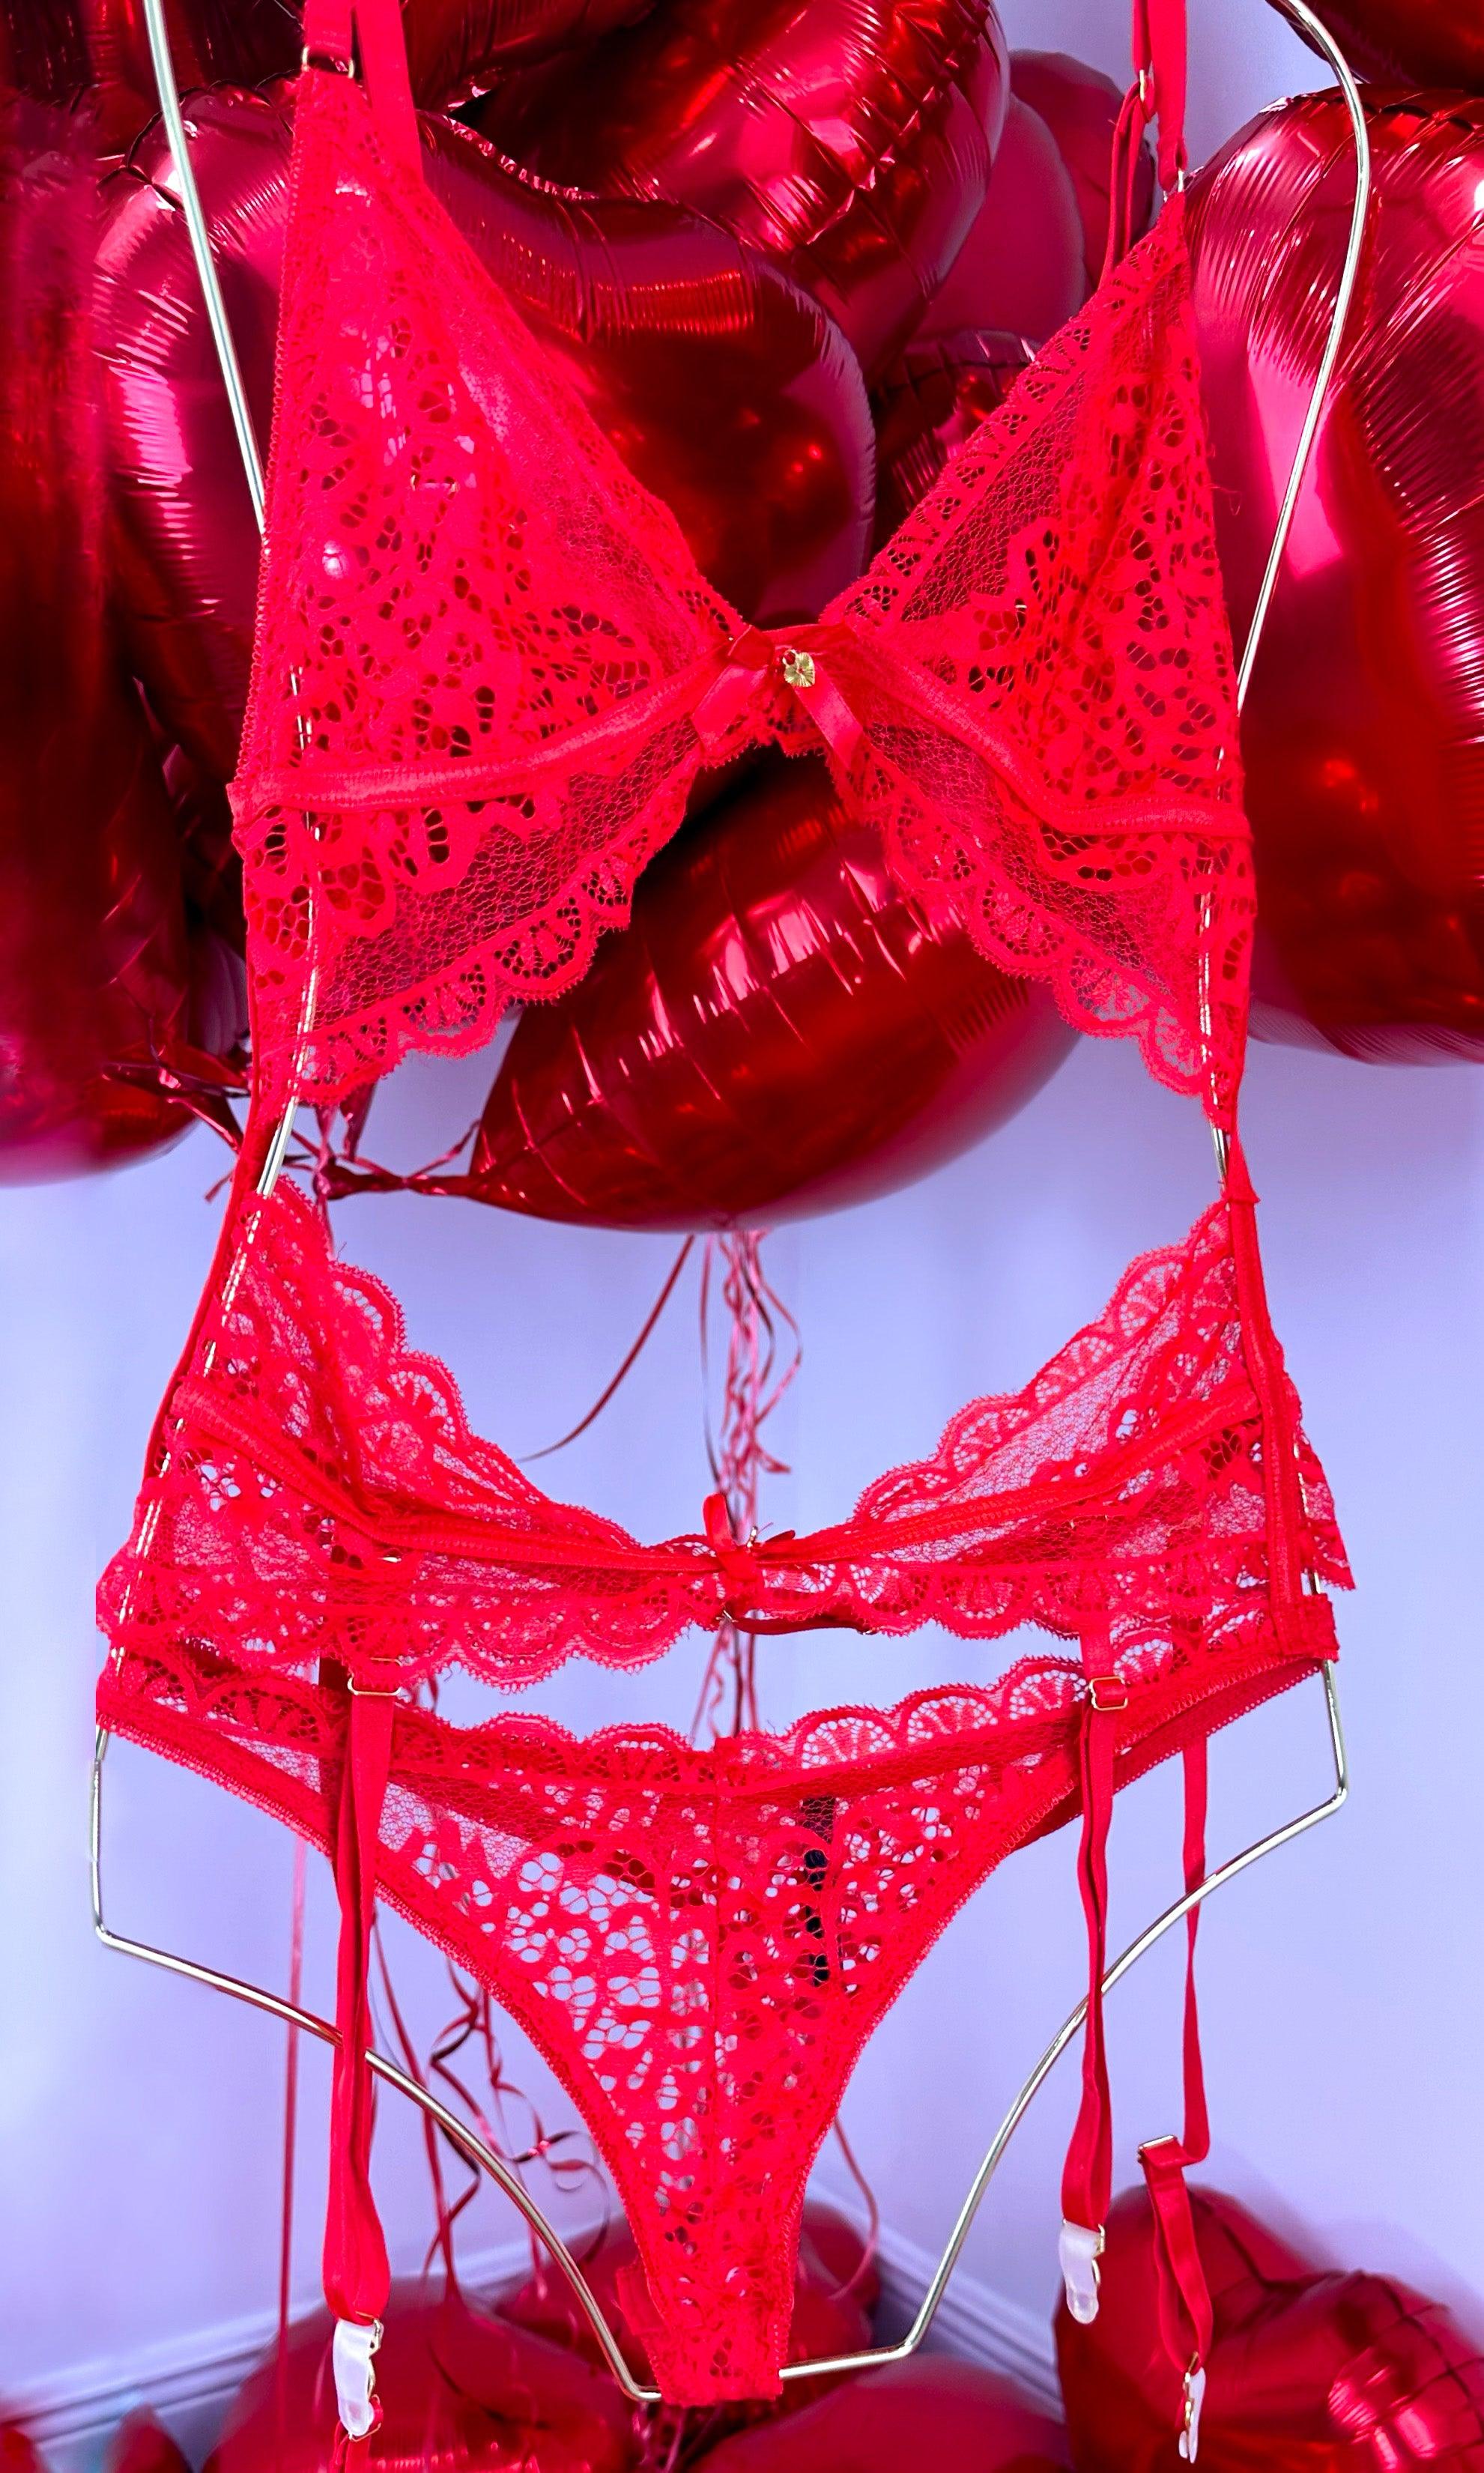 EHQJNJ Sheer Lingerie Women Lingerie Hot Lace Bra Set Red Teddy